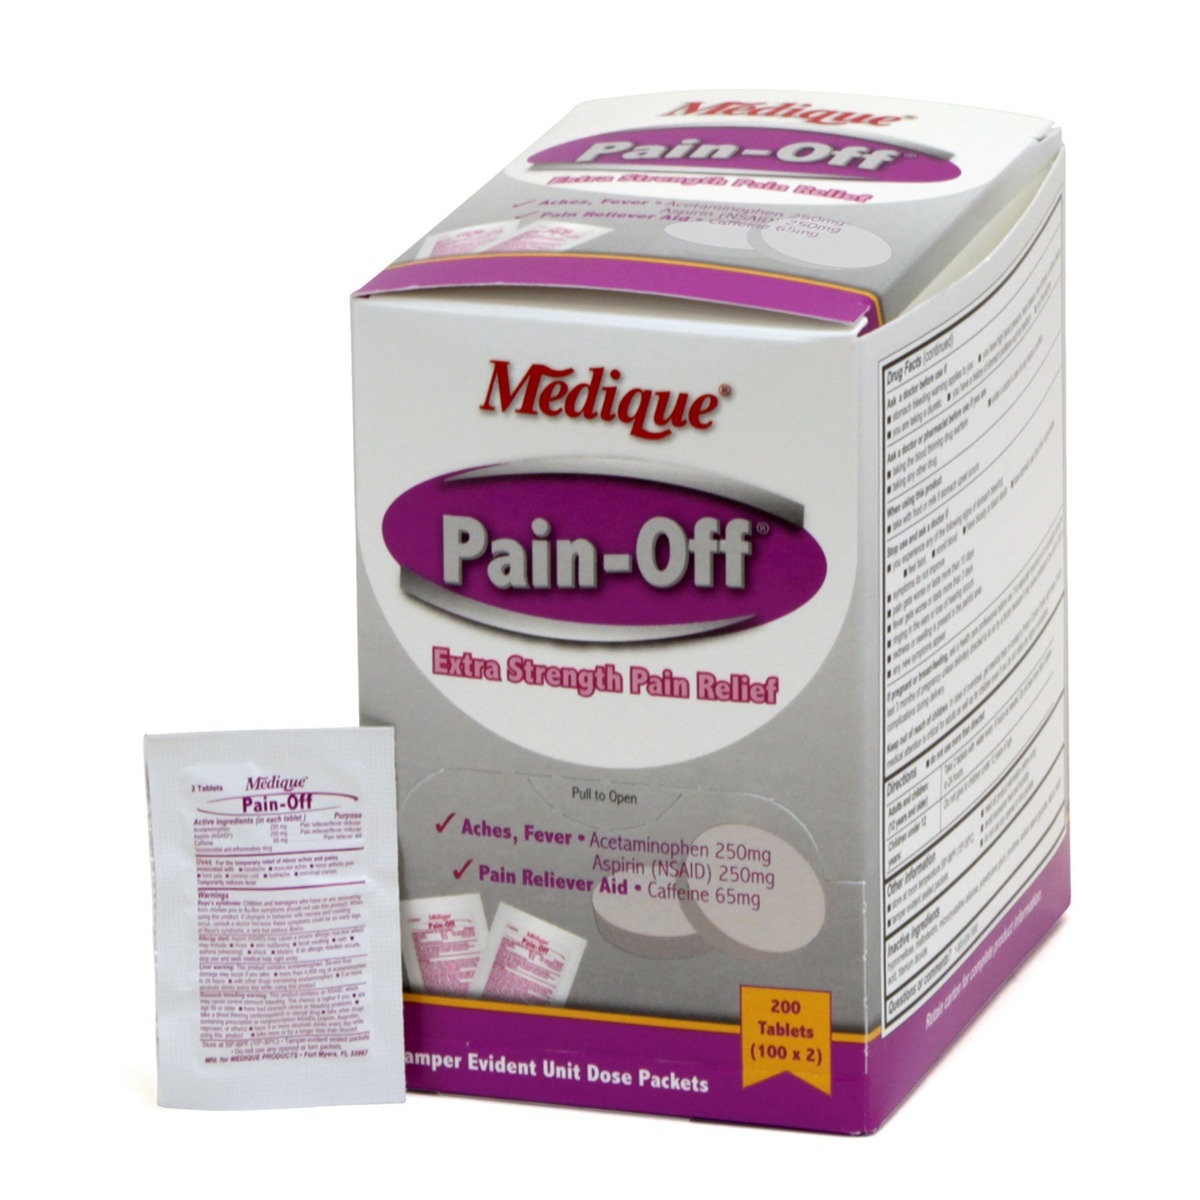 Medique Pain-Off